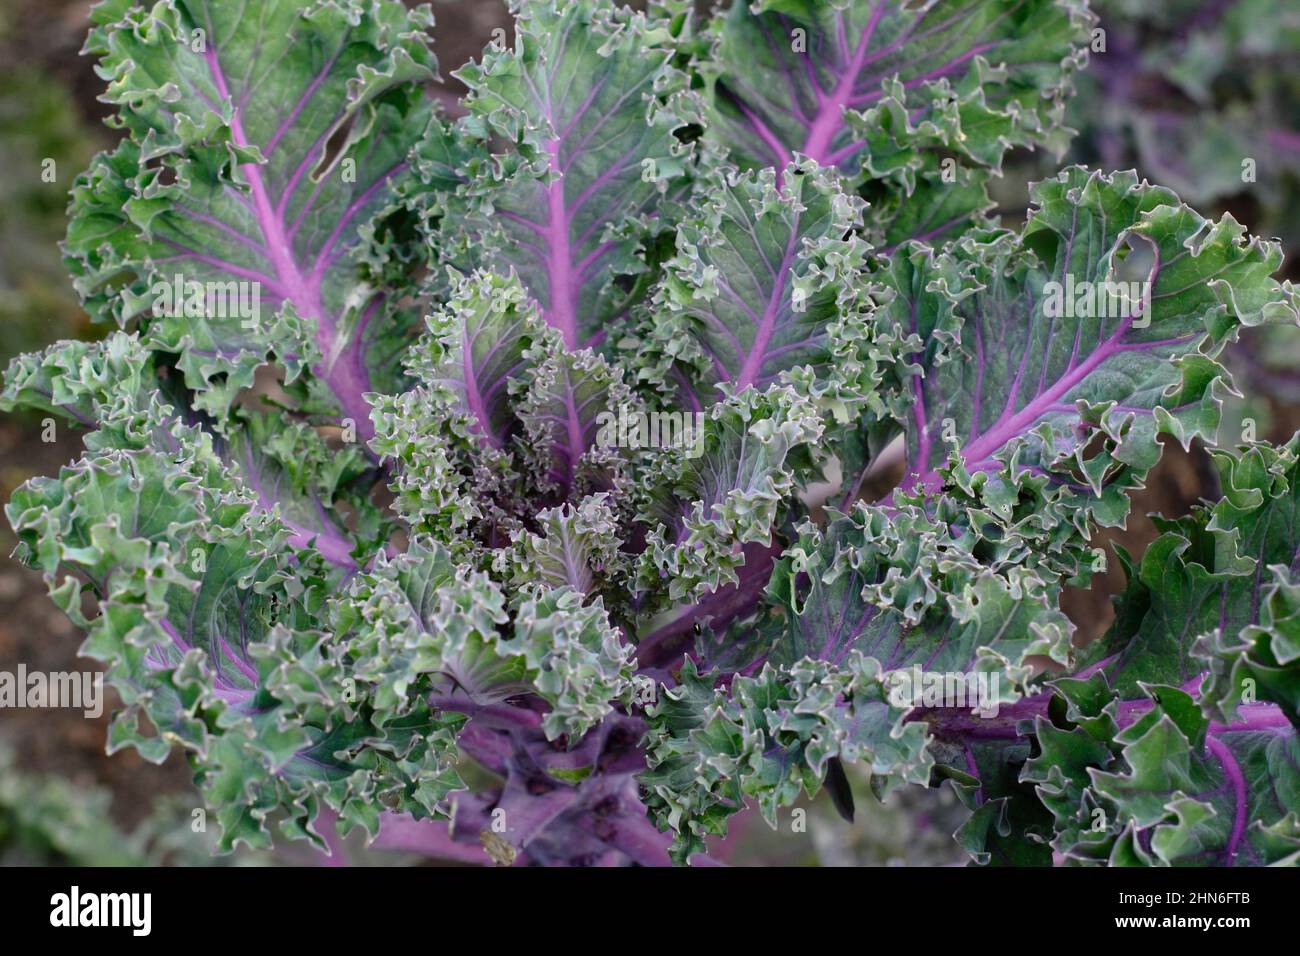 Brassica oleracea 'Midnight Sun' Kale foglie ornamentali di kale con vene viola. REGNO UNITO. Foto Stock